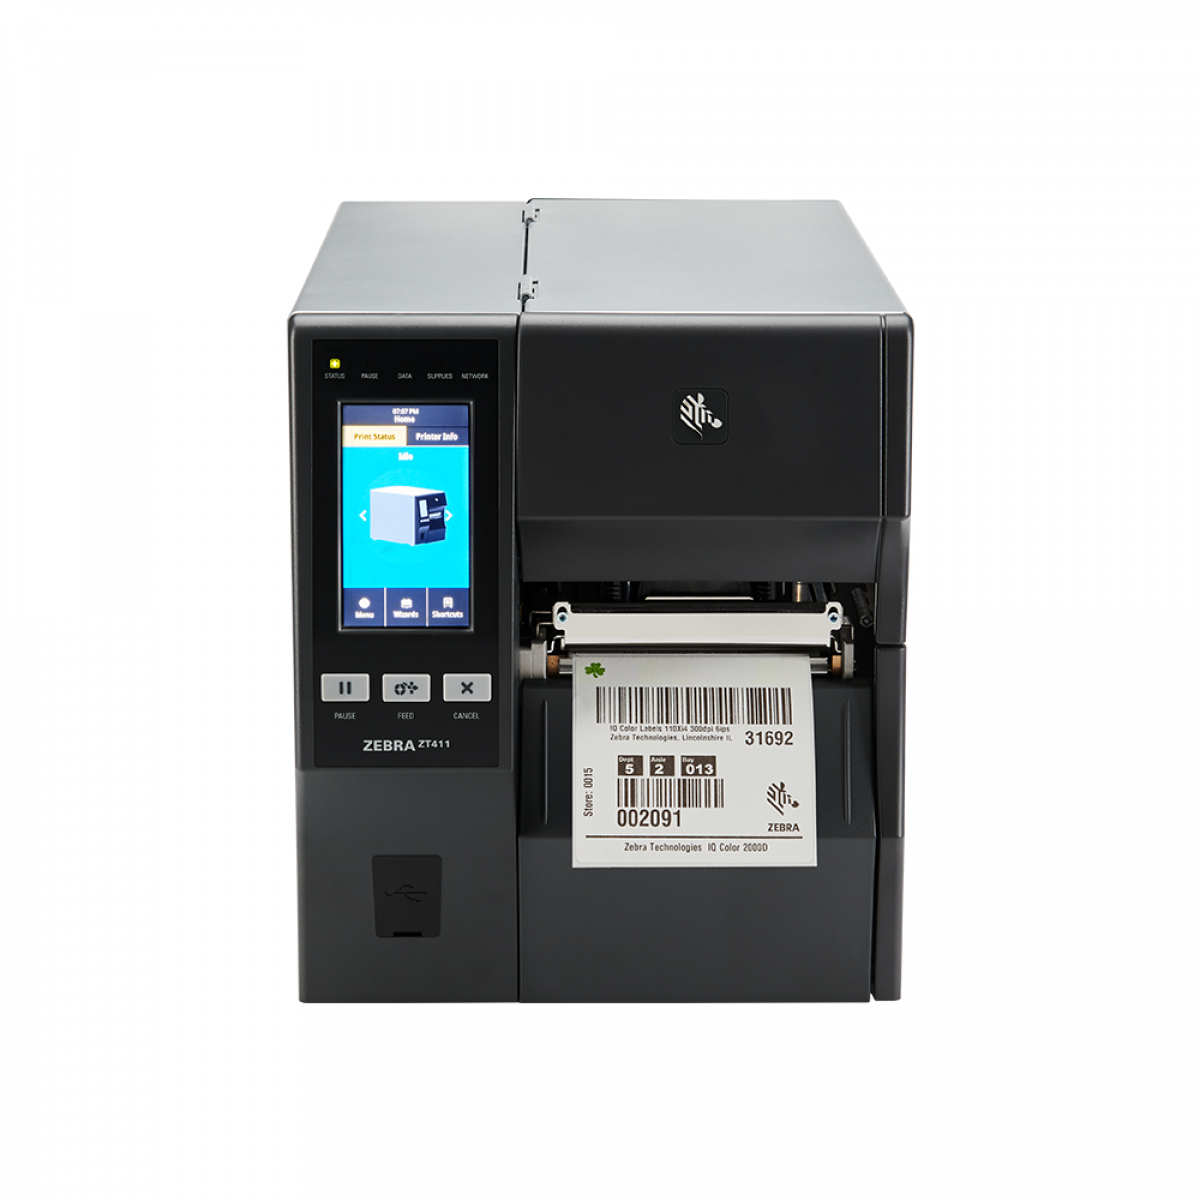 Zebra ZT411 industrial printer